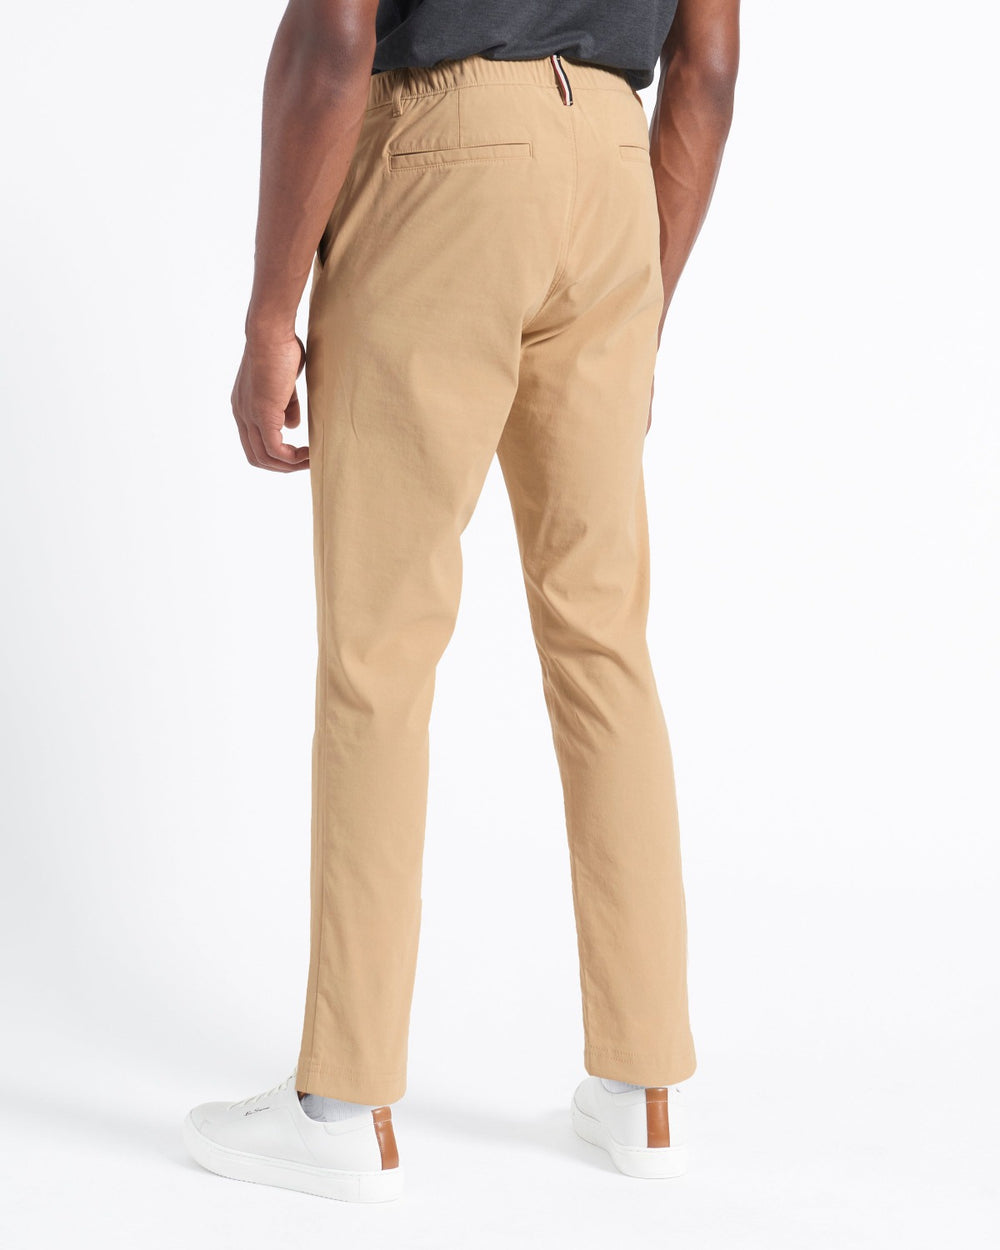 Shop 5 Pack of Men's Khaki Stretcher Trousers - Multi-color